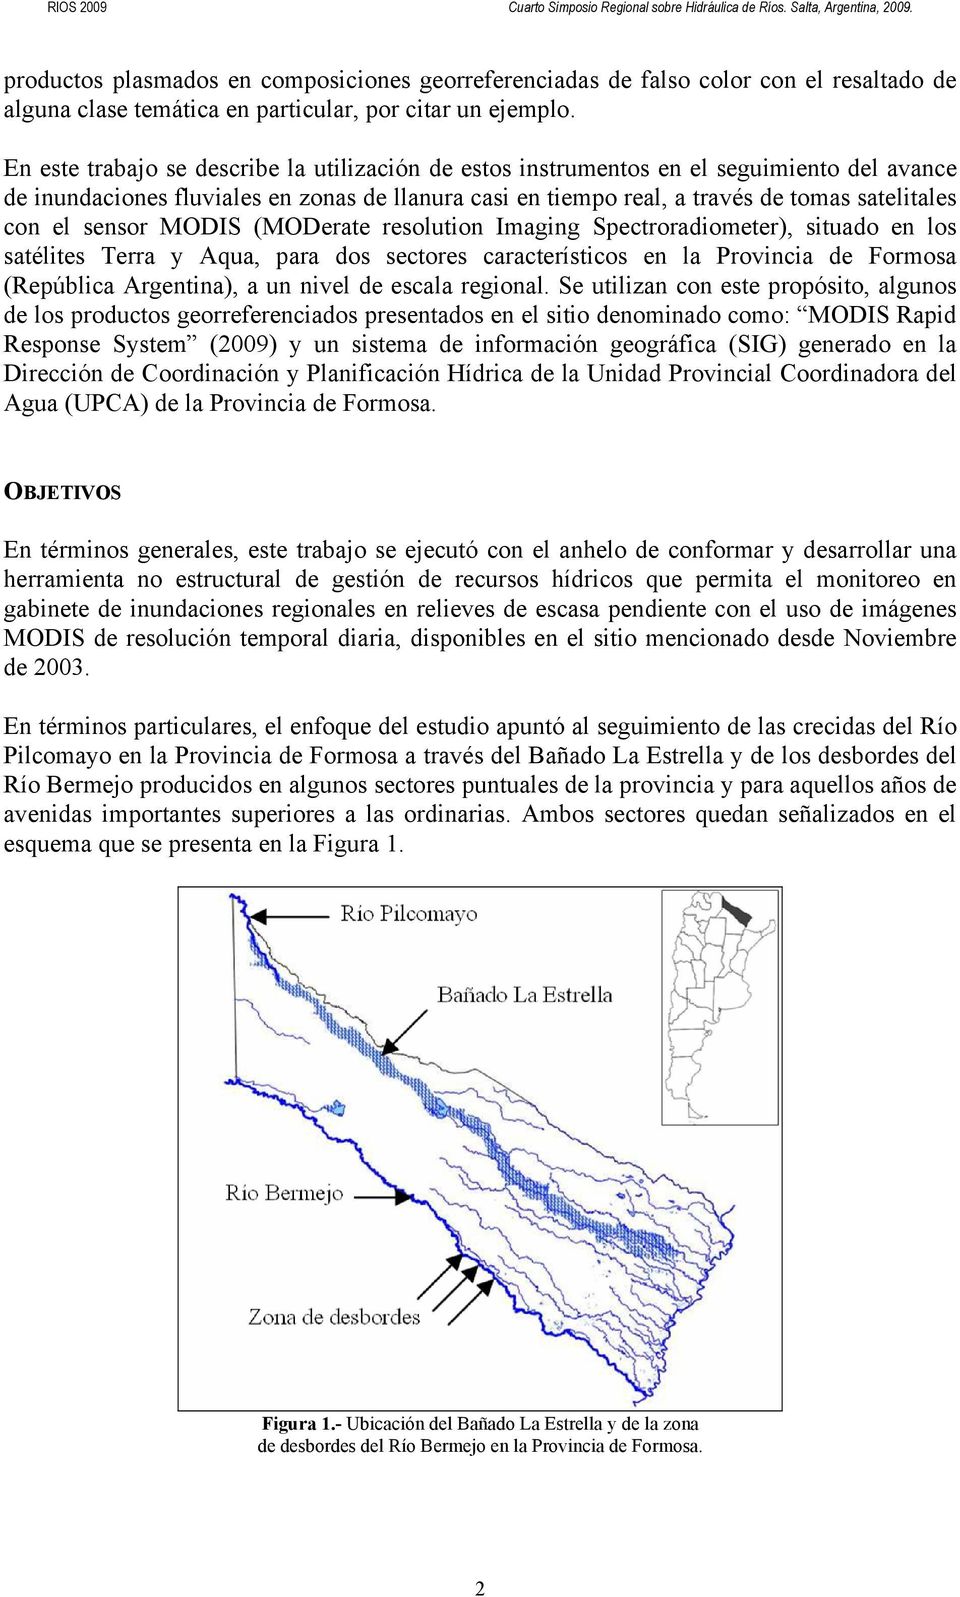 sensor MODIS (MODerate resolution Imaging Spectroradiometer), situado en los satélites Terra y Aqua, para dos sectores característicos en la Provincia de Formosa (República Argentina), a un nivel de